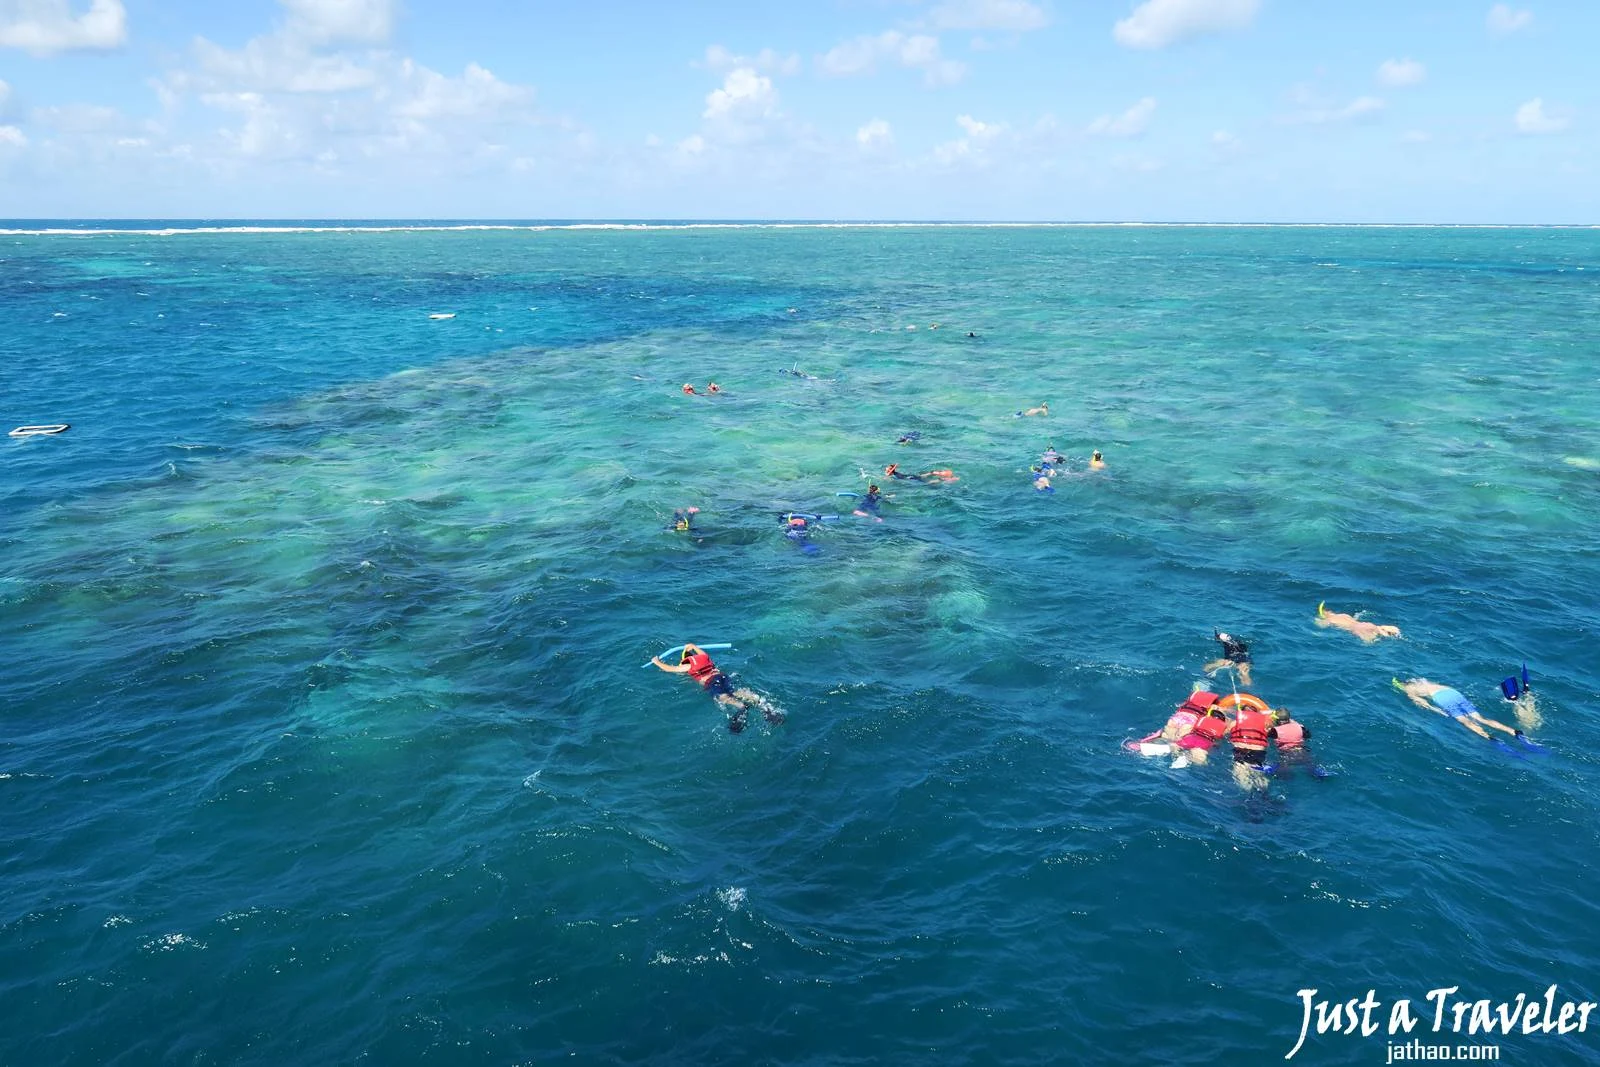 凱恩斯-大堡礁-外堡礁-推薦-公司-行程-旅遊-凱恩斯潛水-凱恩斯浮潛-自由行-澳洲-Cairns-Outer-Great-Barrier-Reef-Snorkel-Diving-Travel-Australia